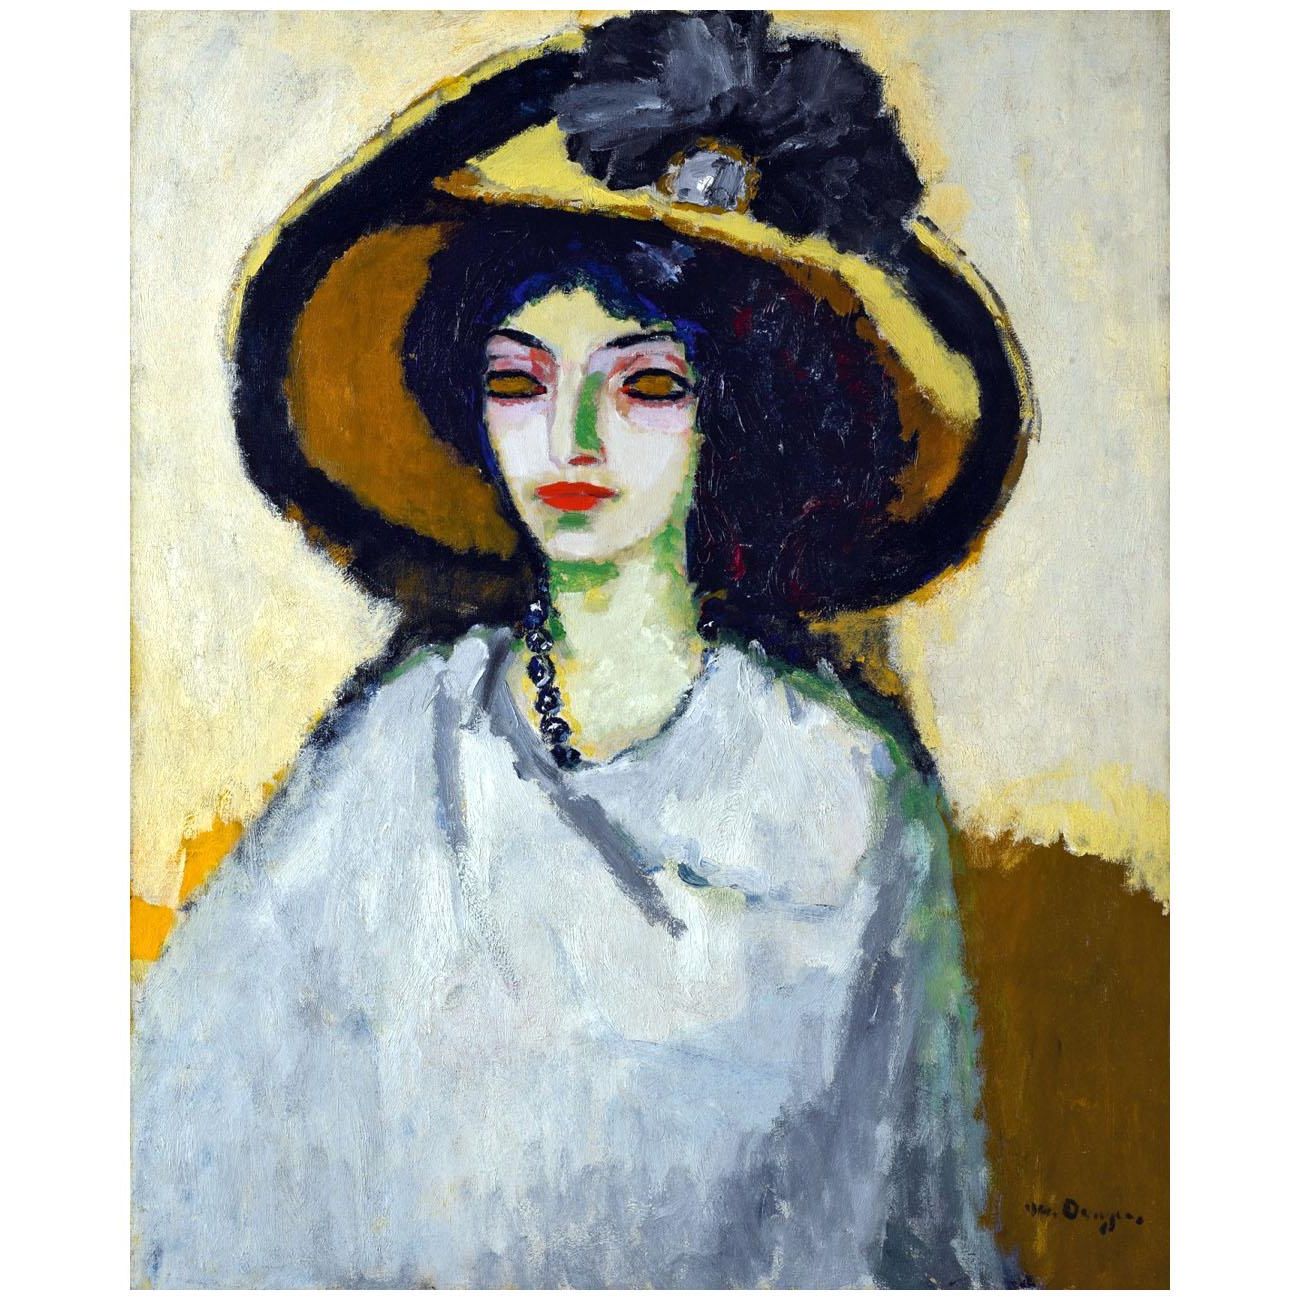 Kees van Dongen. Femme au grande chapeau. 1908. Private collection